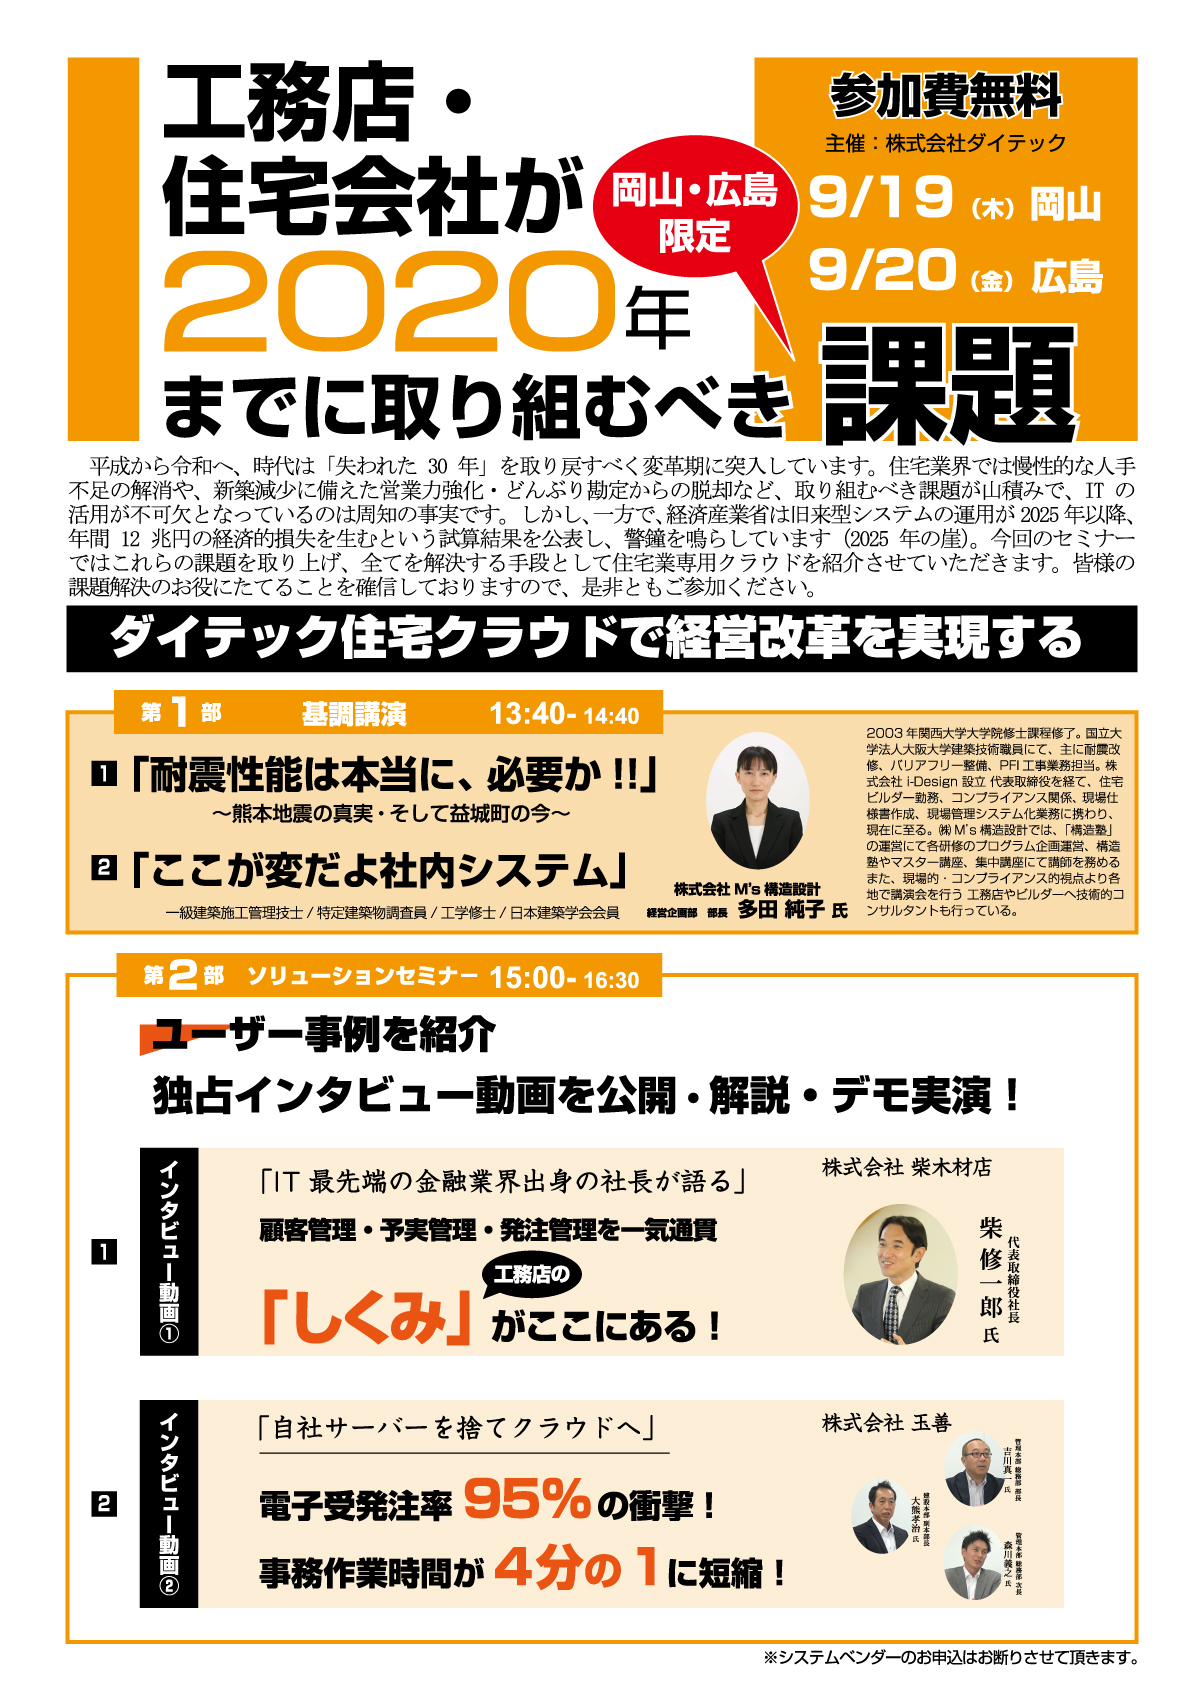 【岡山・広島】工務店・住宅会社が２０２０年までに取り組むべき課題